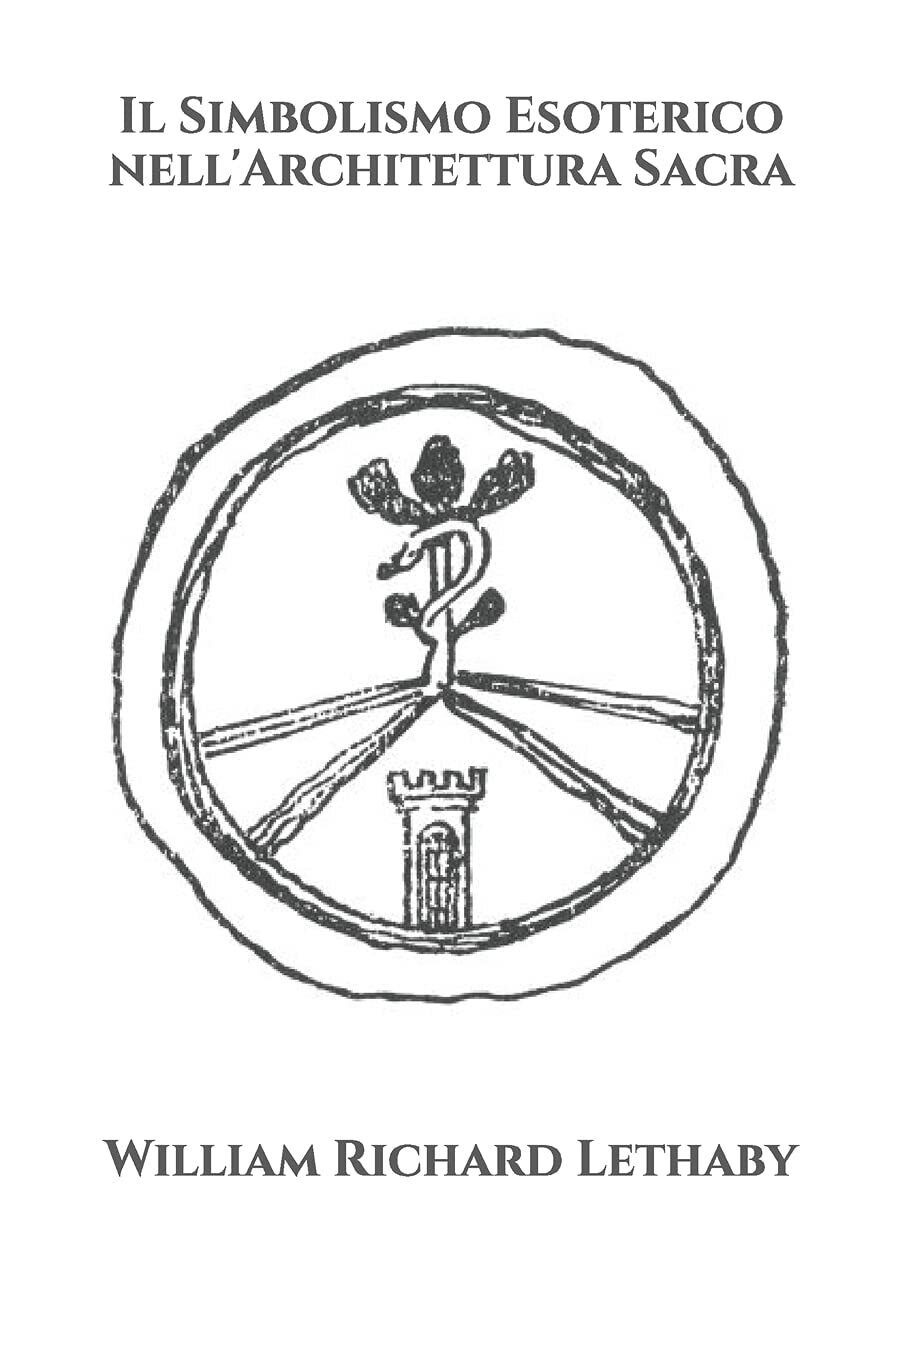 Il Simbolismo Esoterico nelL'Architettura Sacra di William Richard Lethaby,  202